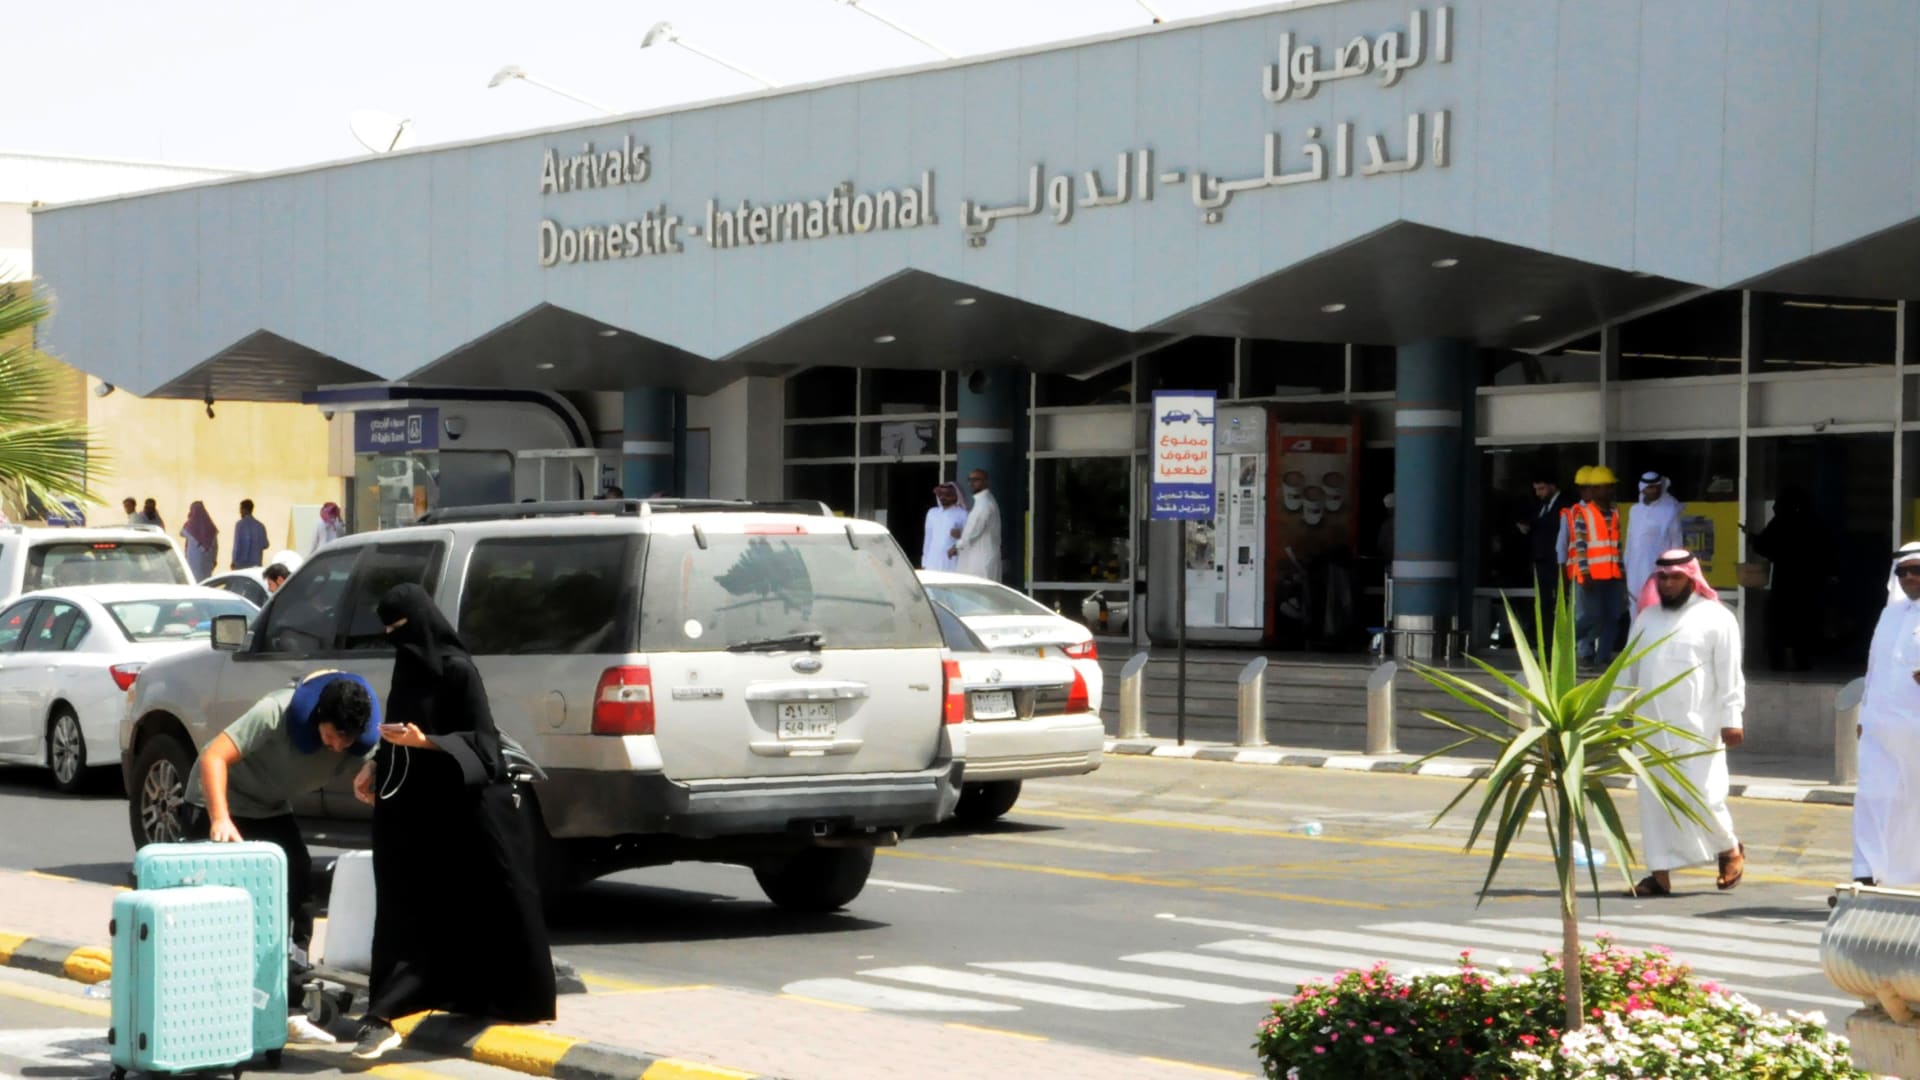 صورة ارشيفية من صالة الوصول بمطار أبها بالسعودية 